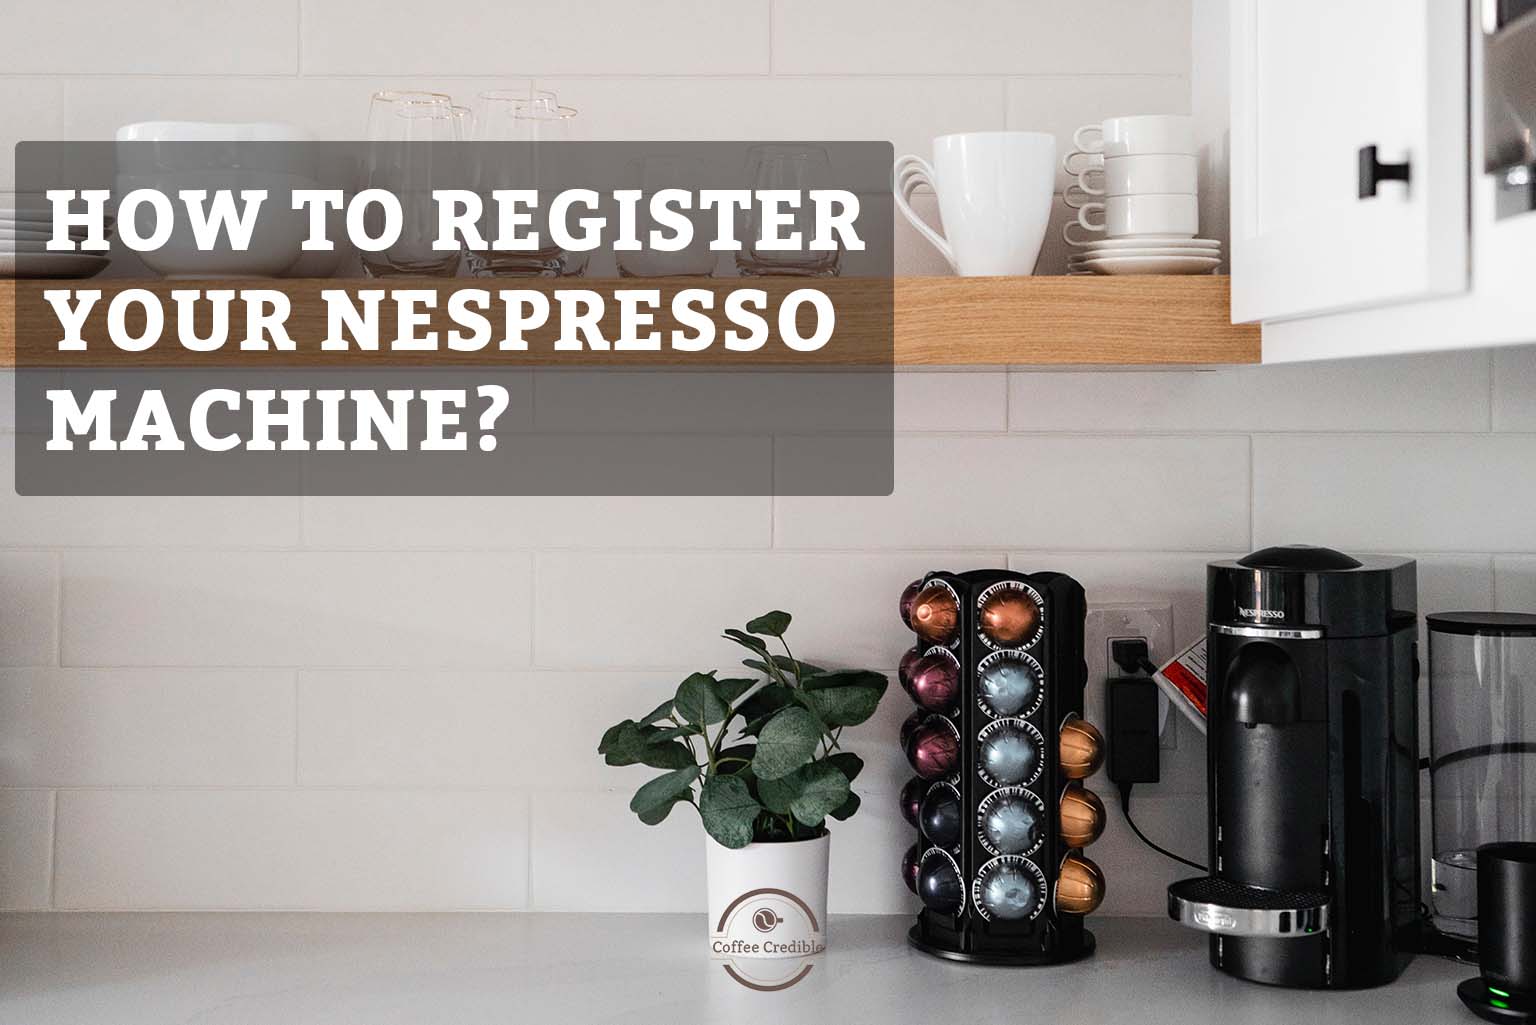 utilsigtet hændelse Urskive Invitere How To Register Your Nespresso Machine? [+ 2 Year Warranty]